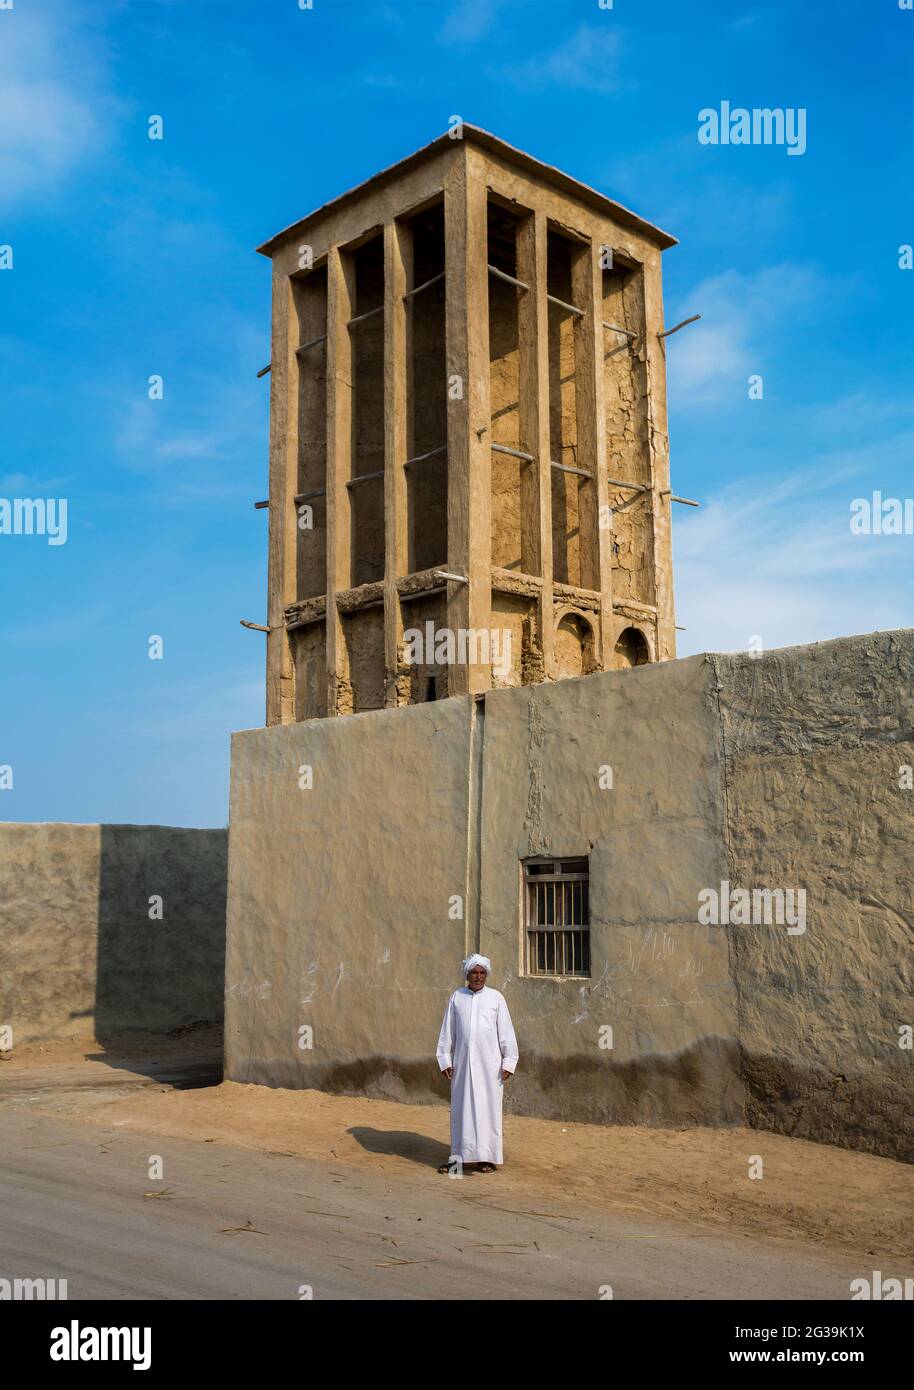 Das prominenteste Element in den Häusern von Laft ist ihr Windturm (Windfänger). Das Dorf Haft liegt auf der Insel Qeshm in der Provinz Hormozgan, Iran. Stockfoto